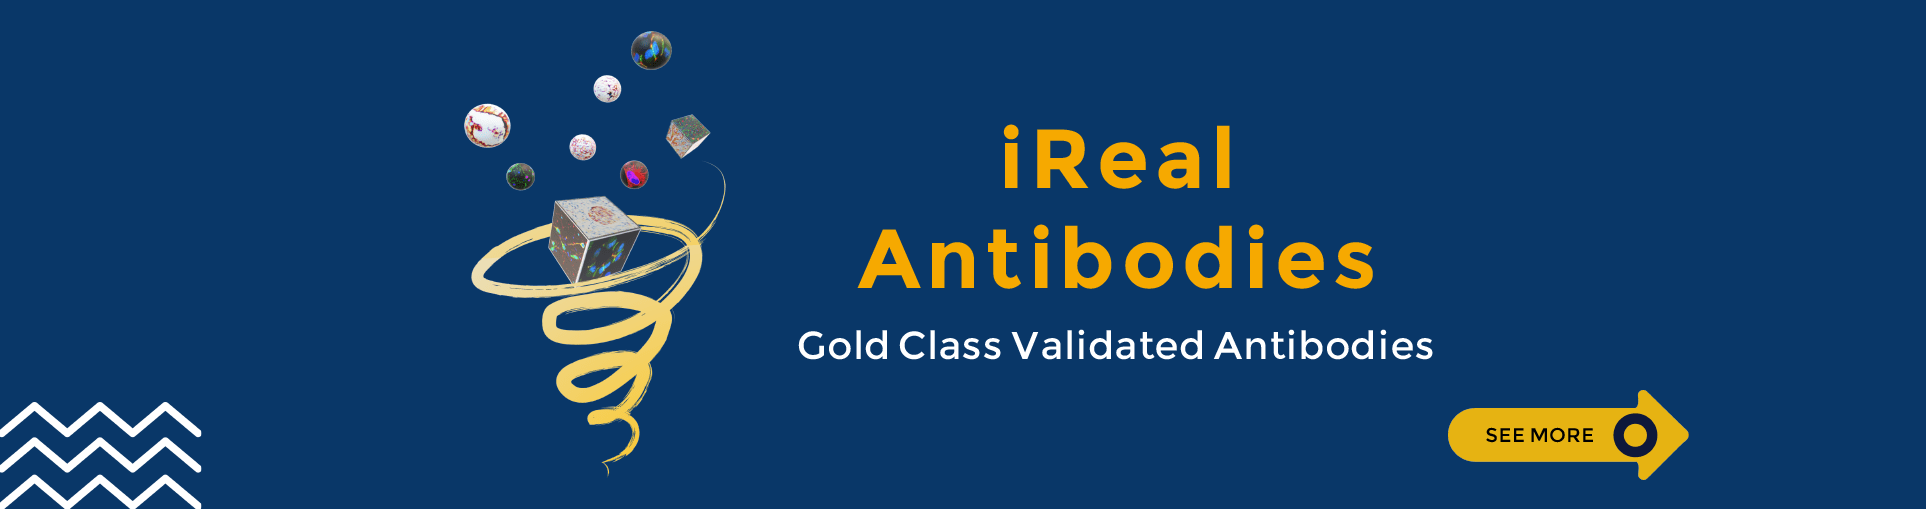 iRealBio antibodis Gold Class Validated Antibodies